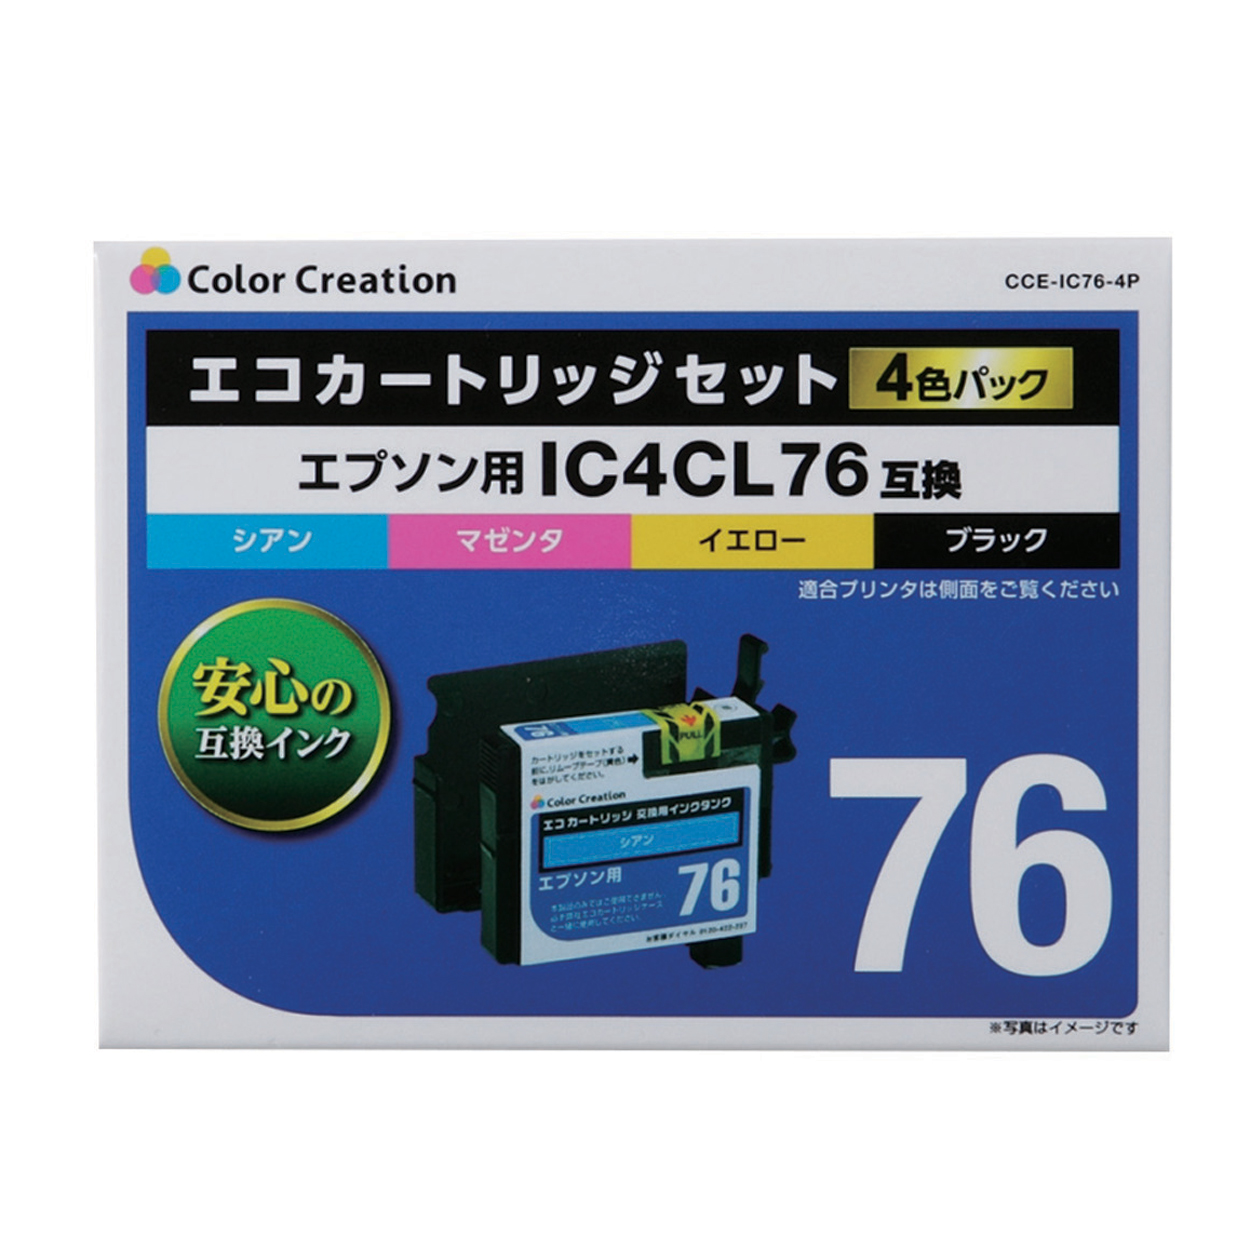 エプソン IC4CL76互換 エコカートリッジセット CCE-IC76-4P | ColorCreation カラークリエーション